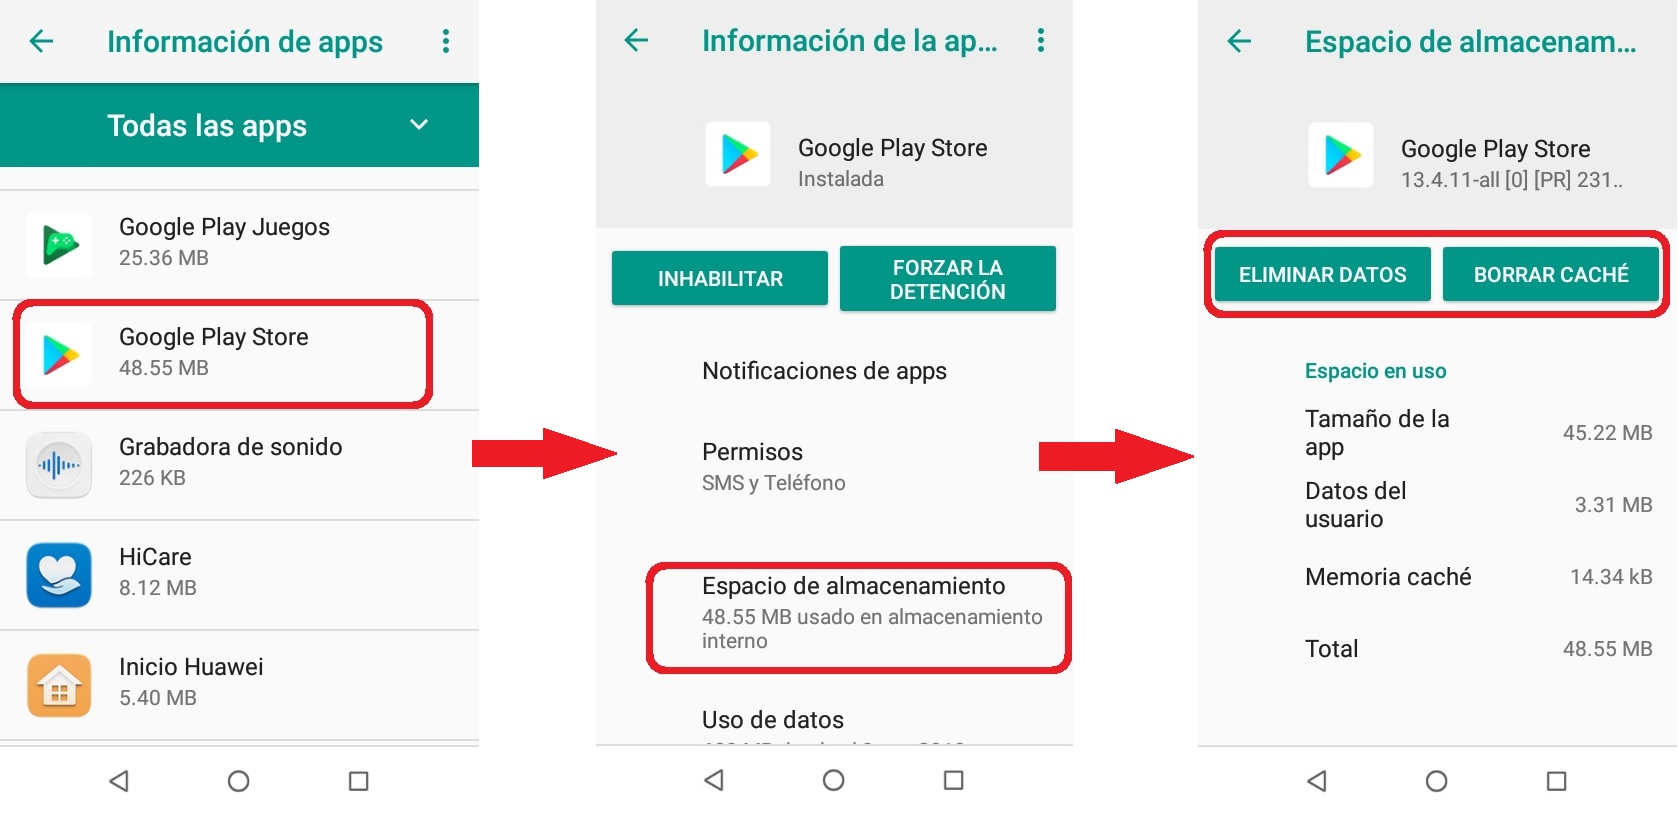 Google Play Services Requiere Autenticación 2